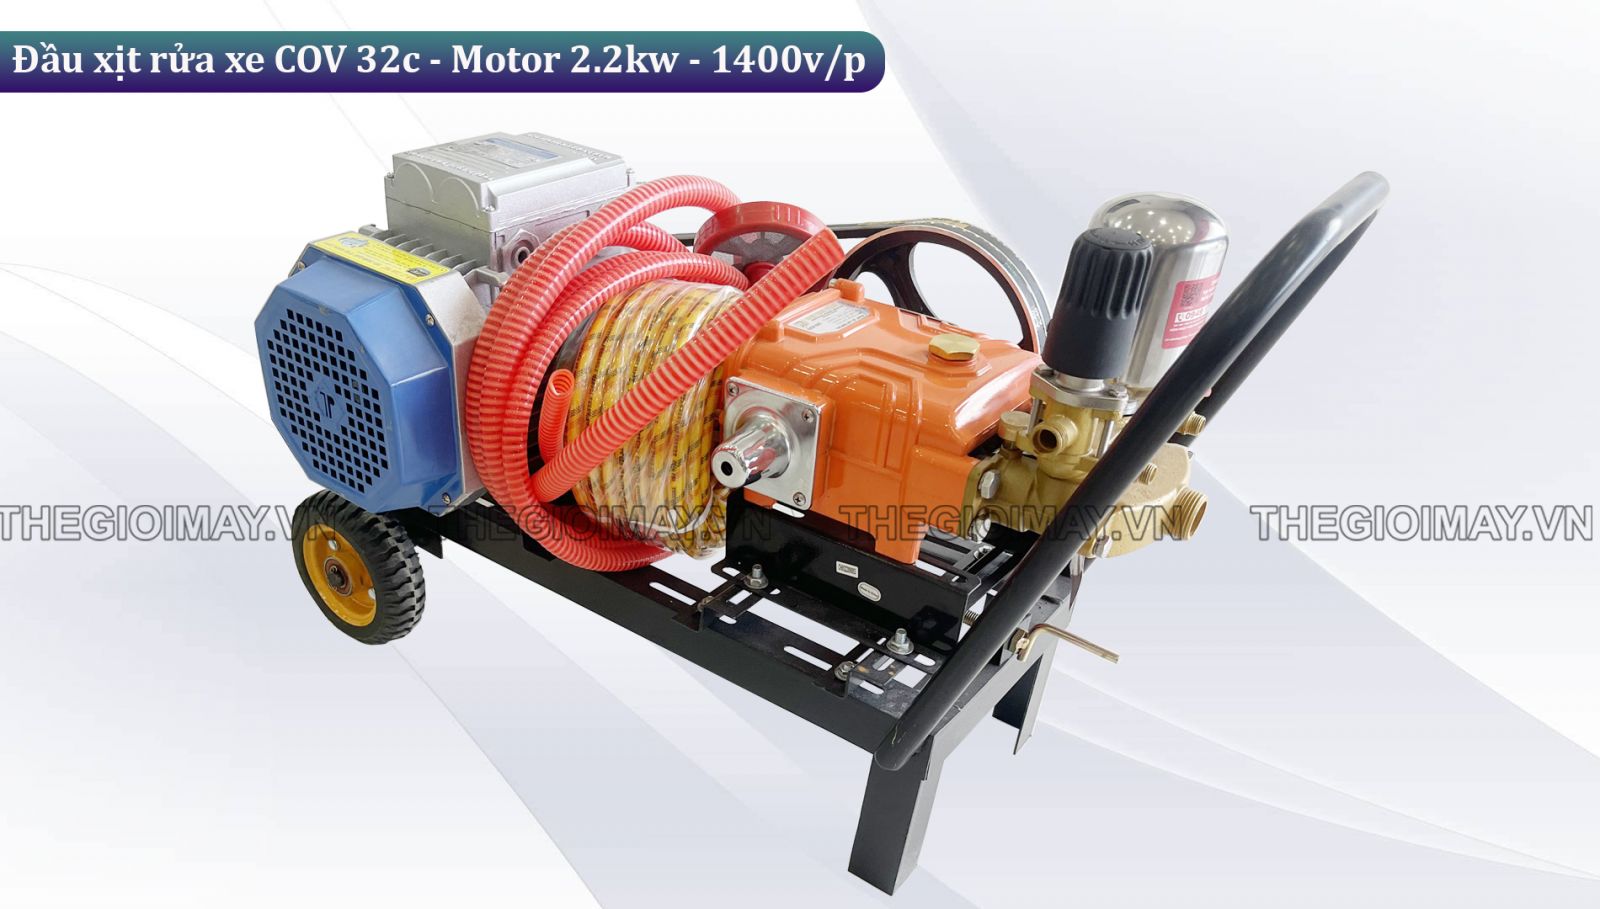 Nguyên lý hoạt động của đầu xịt rửa xe dây đai COV 32c - Motor 2.2kw-1400v/p